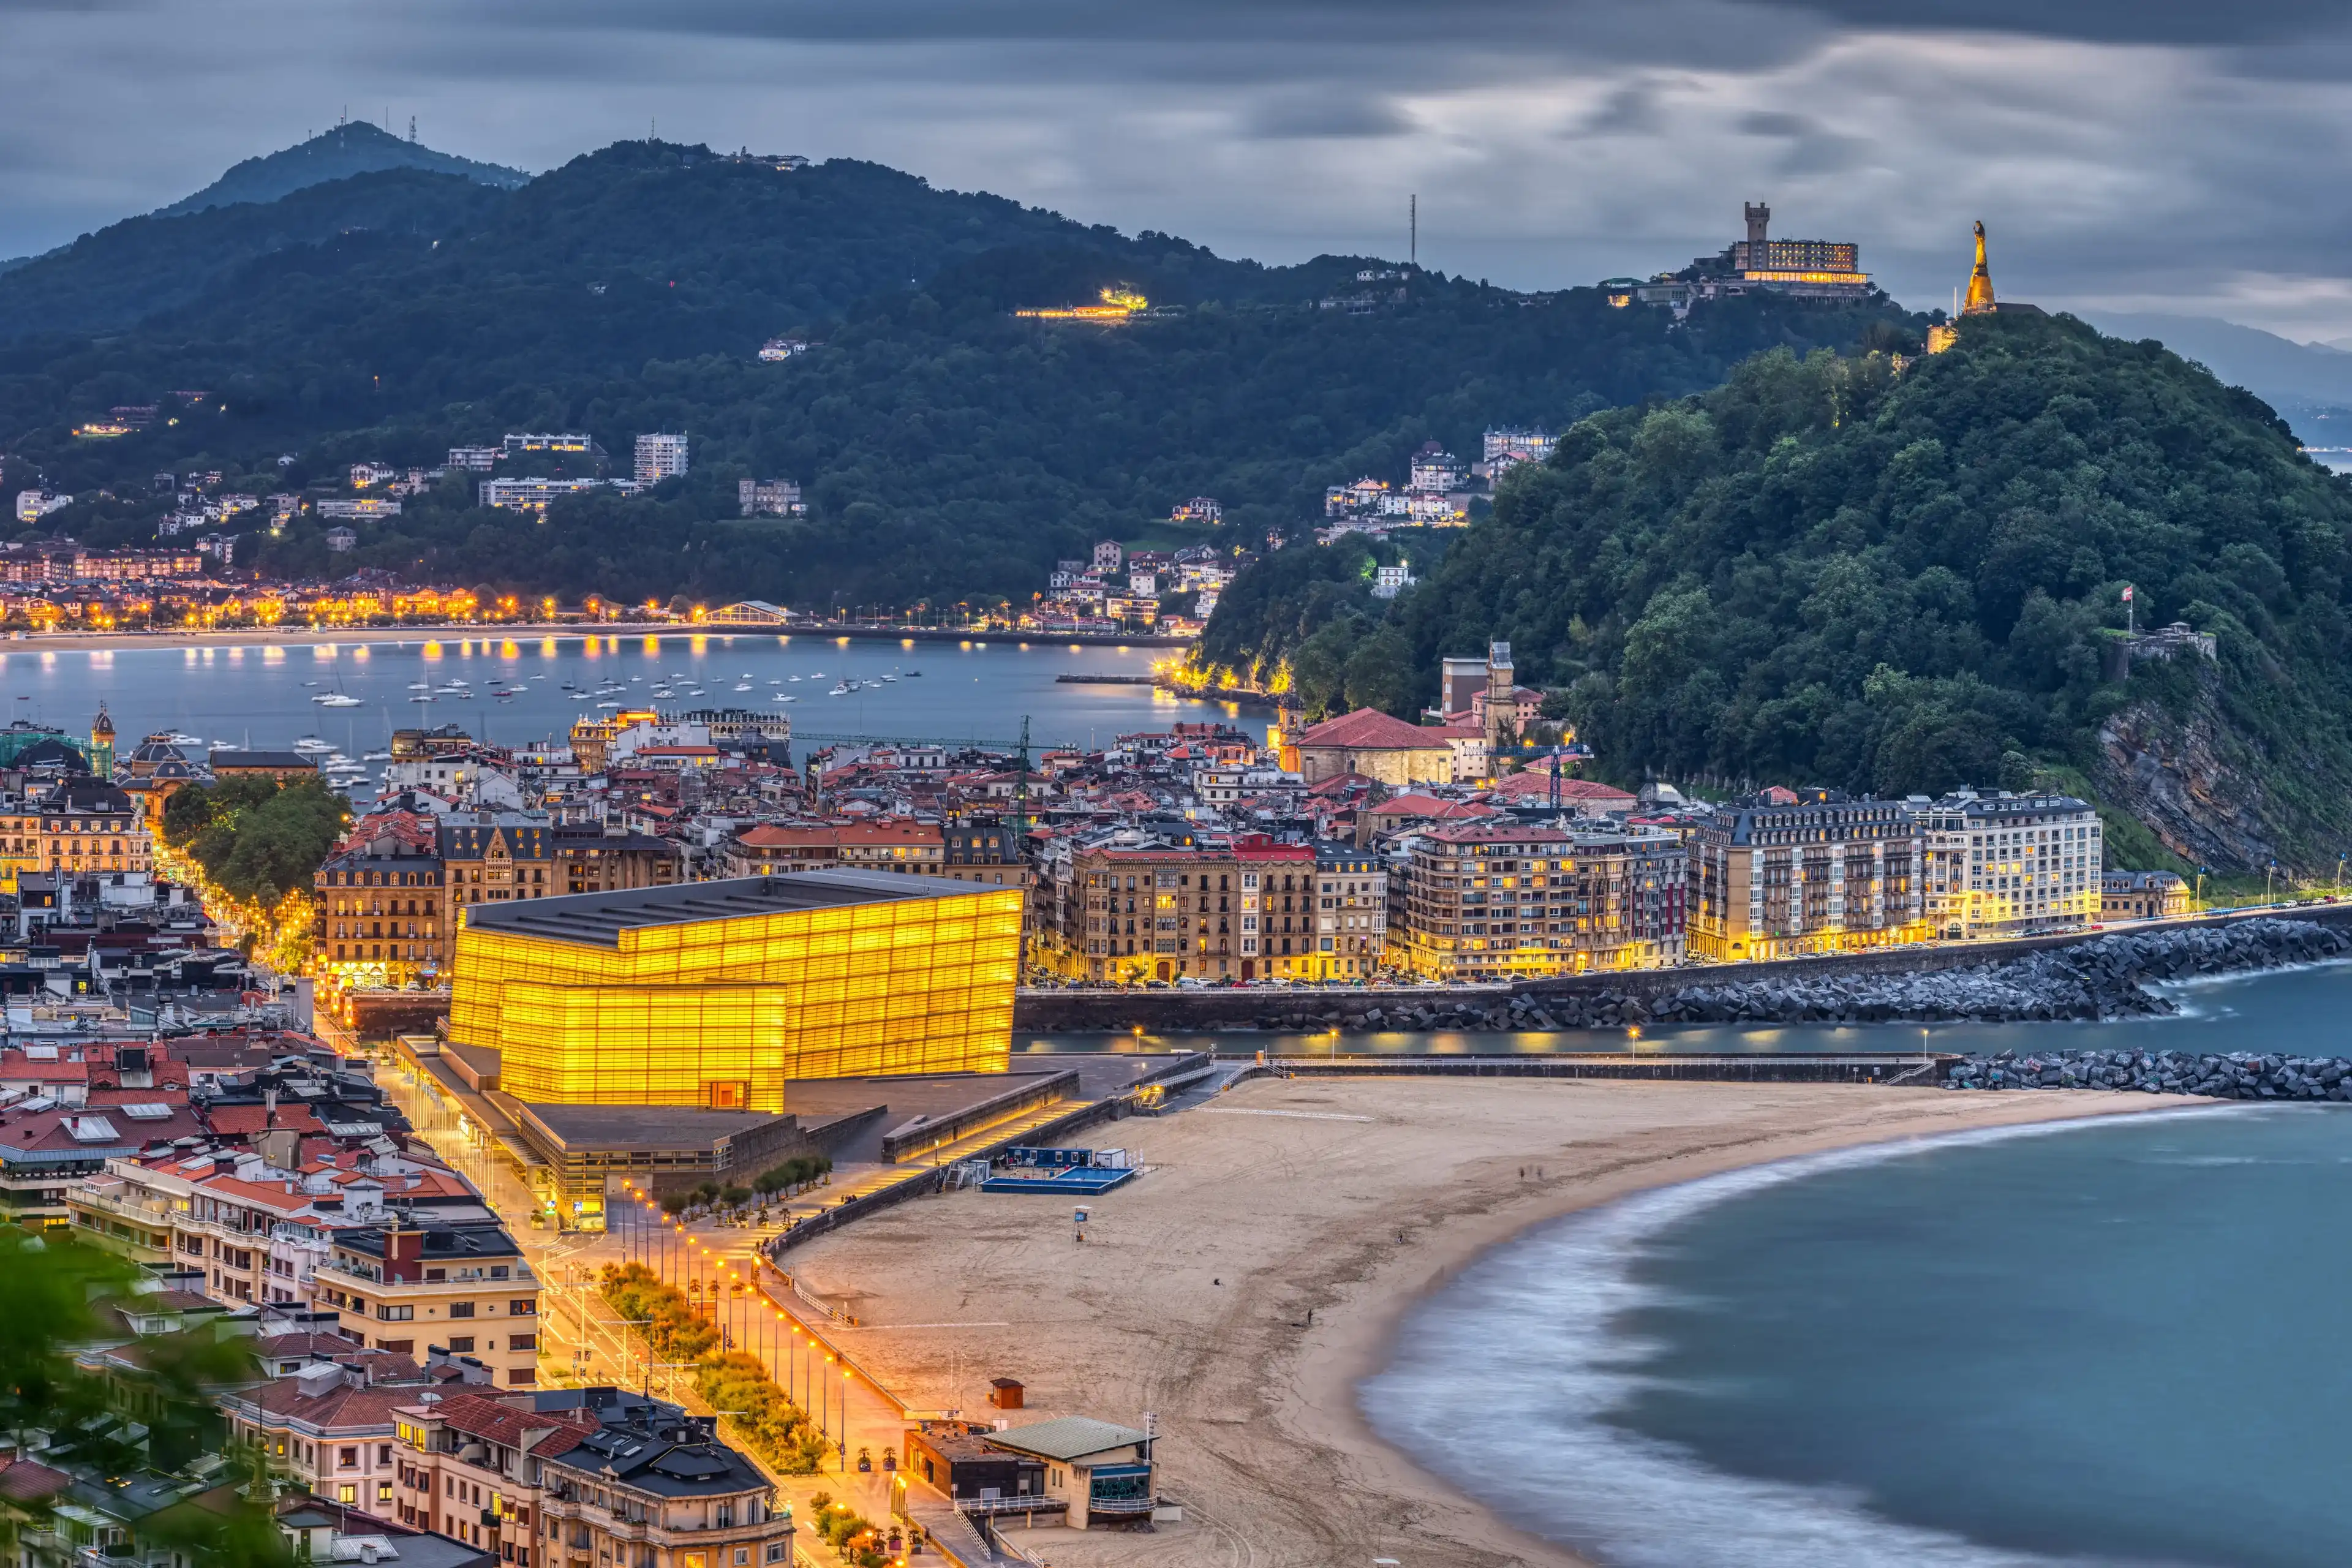 Best Donostia / San Sebastián hotels. Cheap hotels in Donostia / San Sebastián, Spain